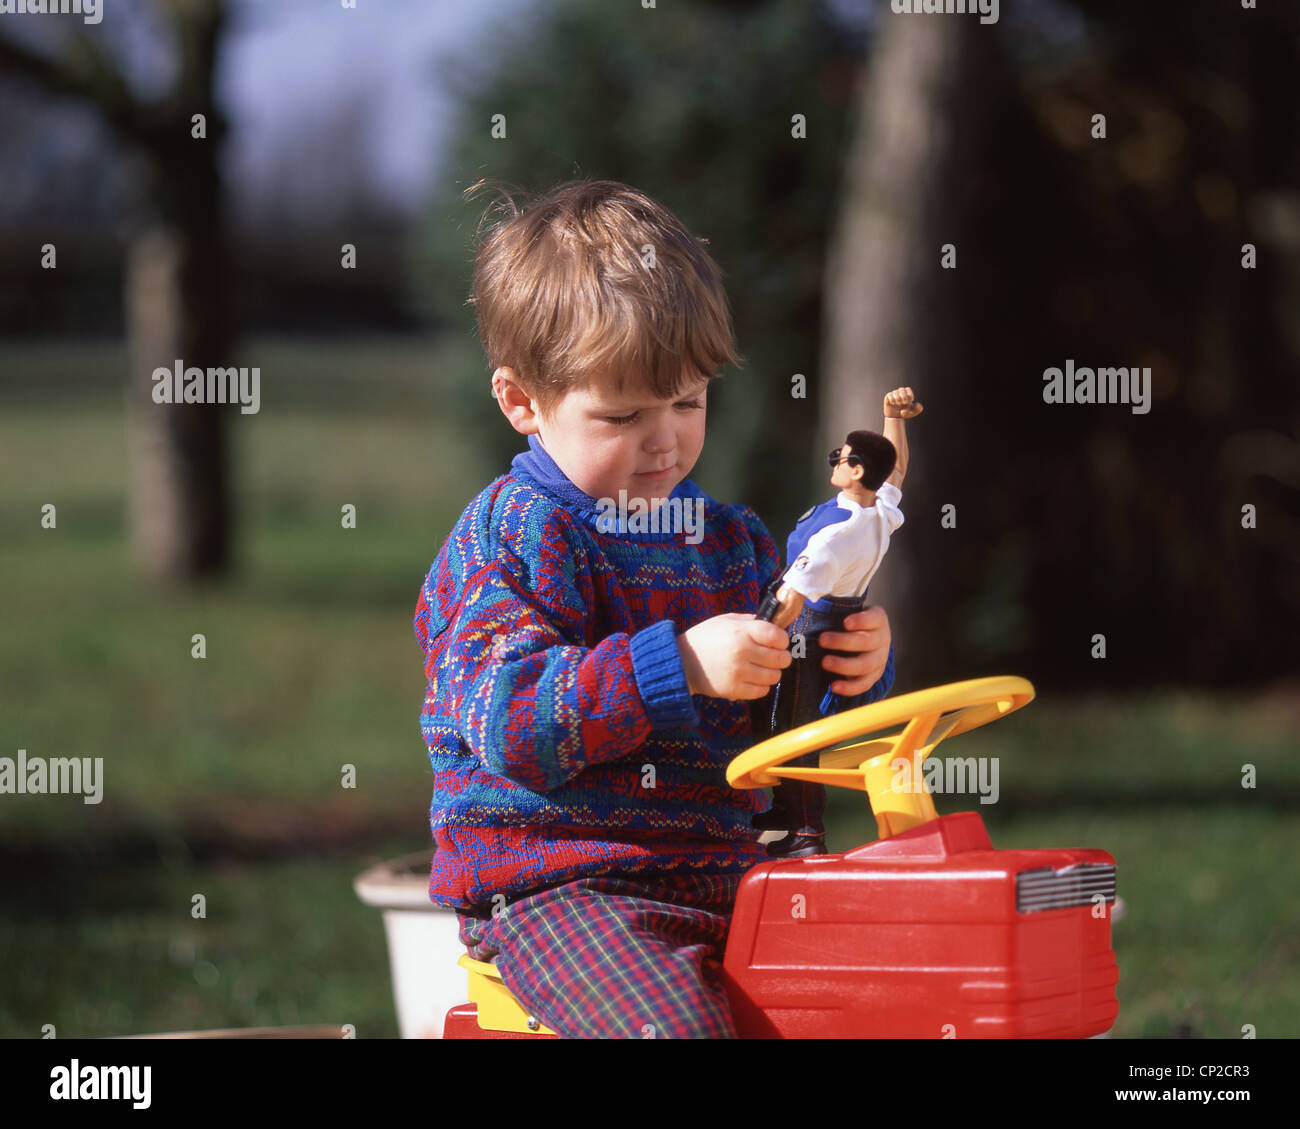 Jeune garçon jouant avec 'Action Man' toy, Sunninghill, Berkshire, Angleterre, Royaume-Uni Banque D'Images